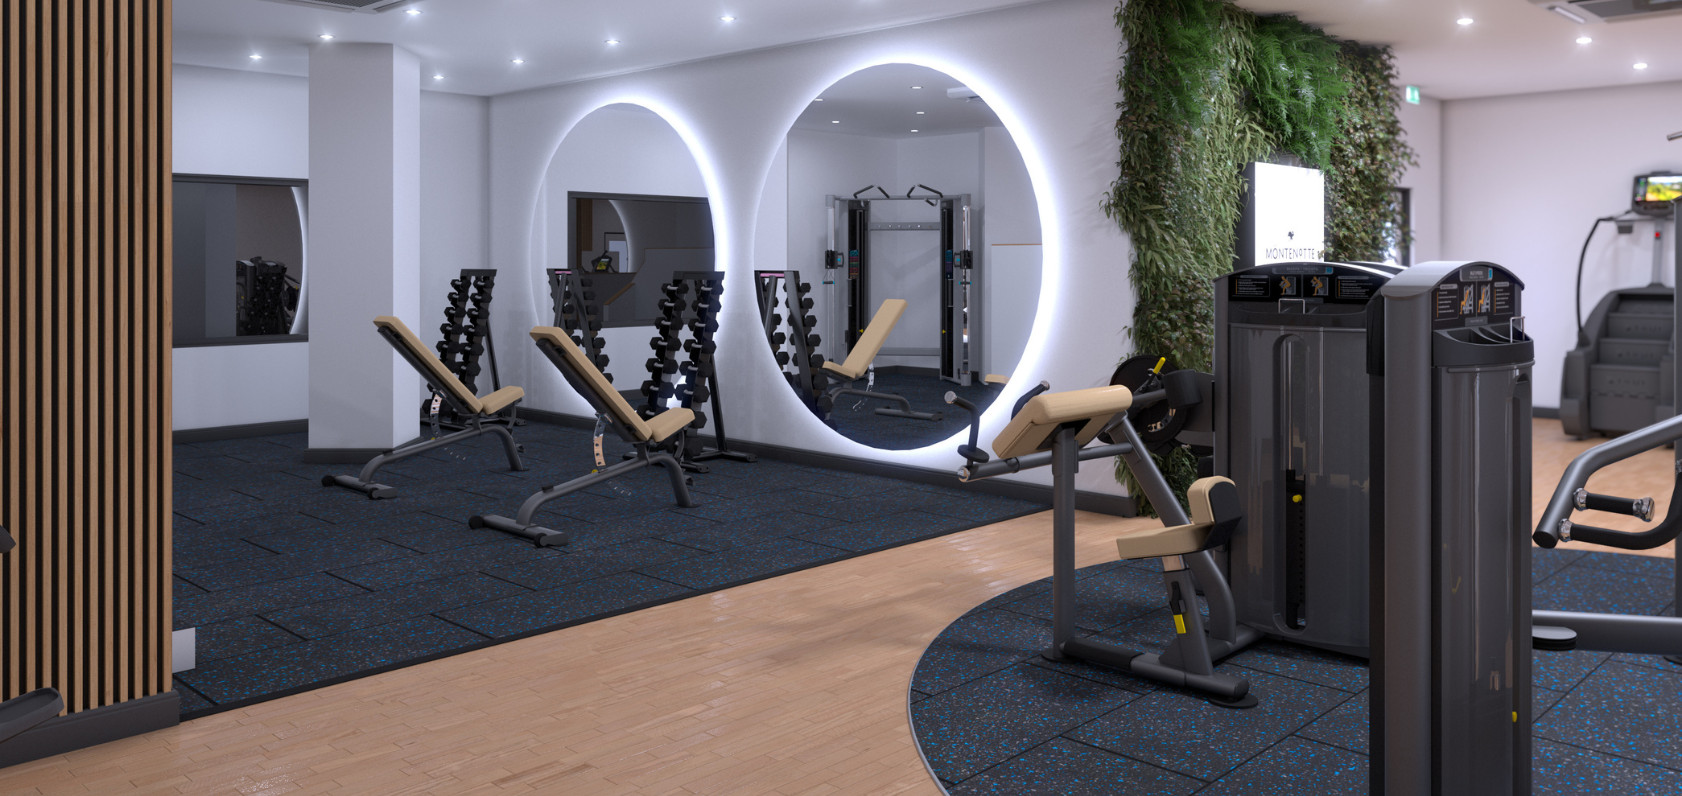 3d design cad image of a gym floor